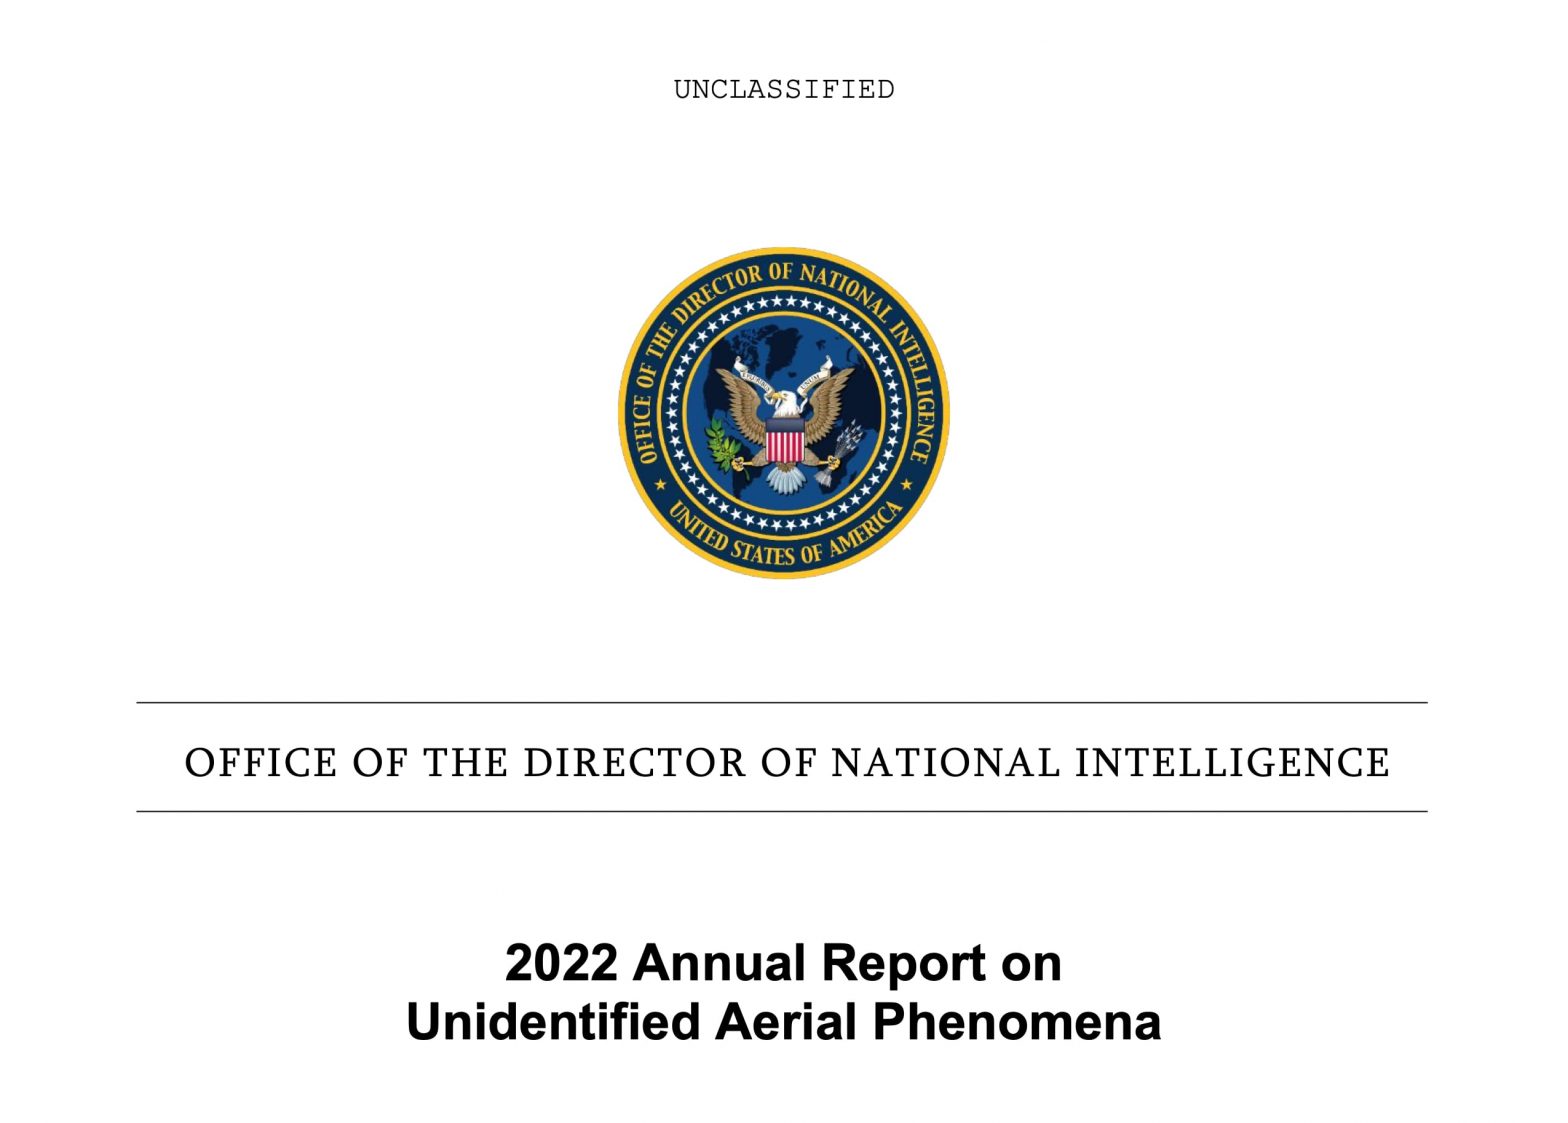 La inteligencia de EE UU publica un decepcionante informe sobre 510 casos de ovnis de militares